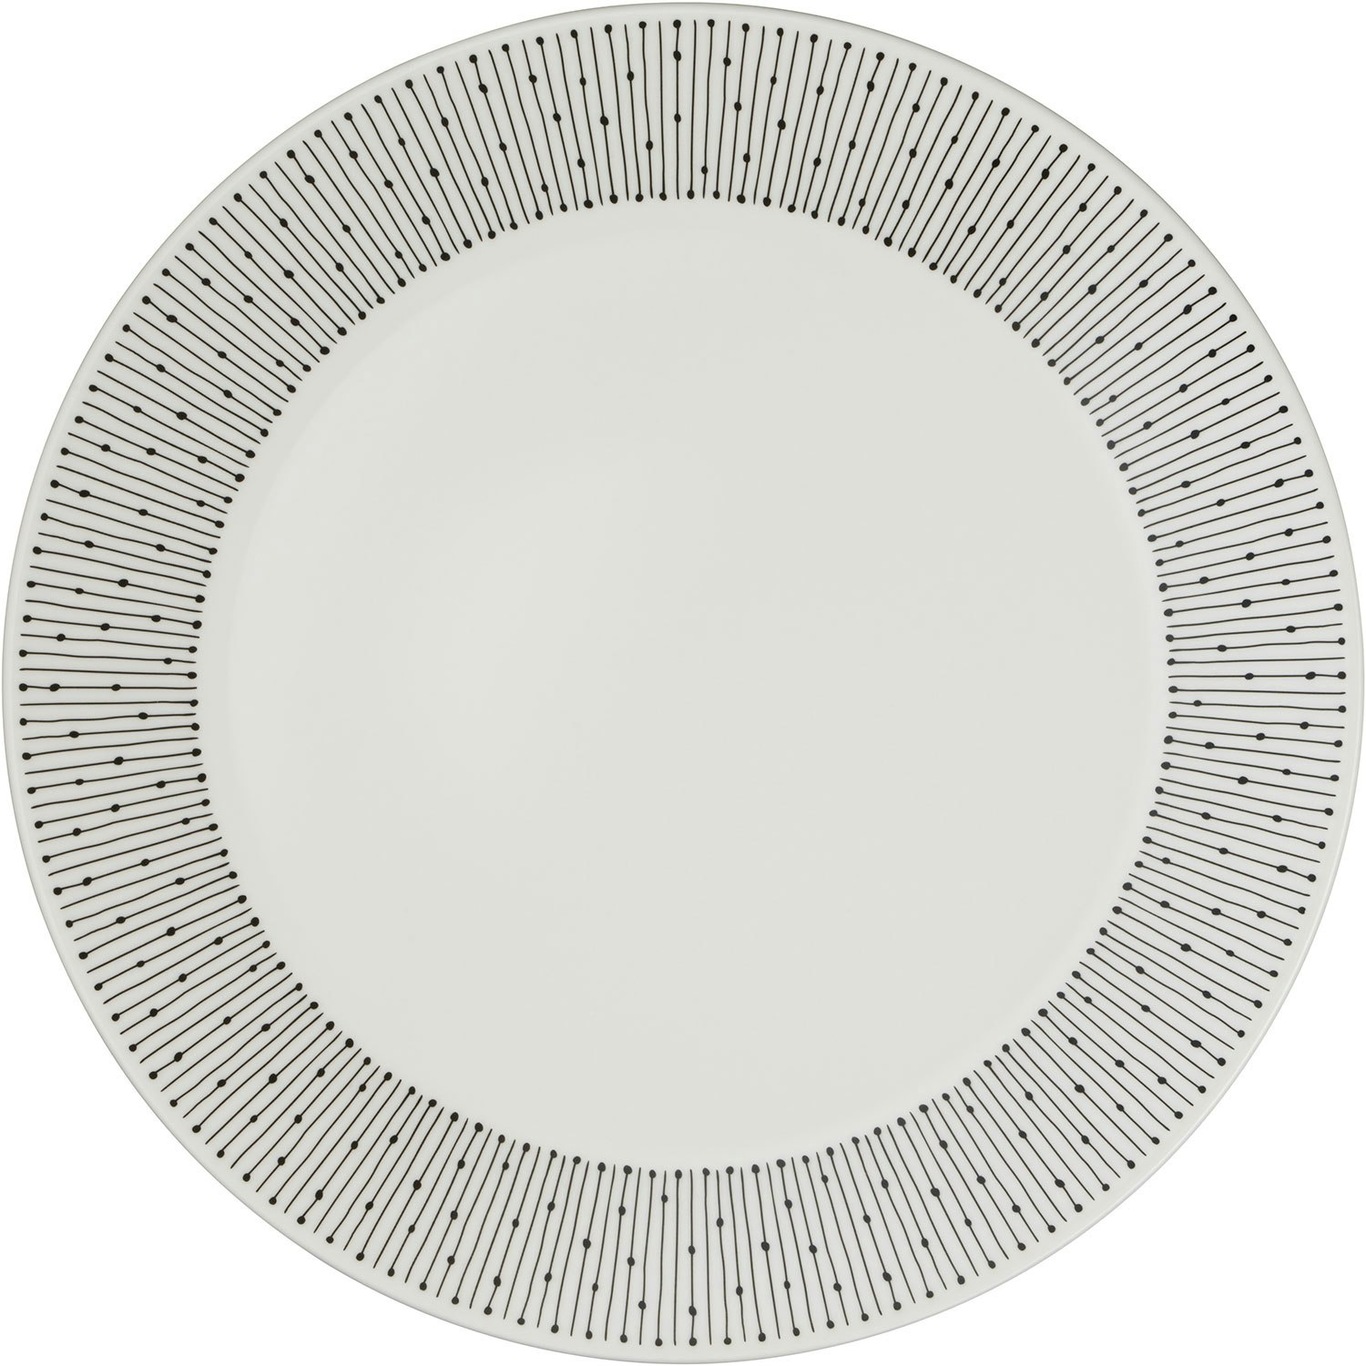 Mainio Sarastus Plate 25 cm, White